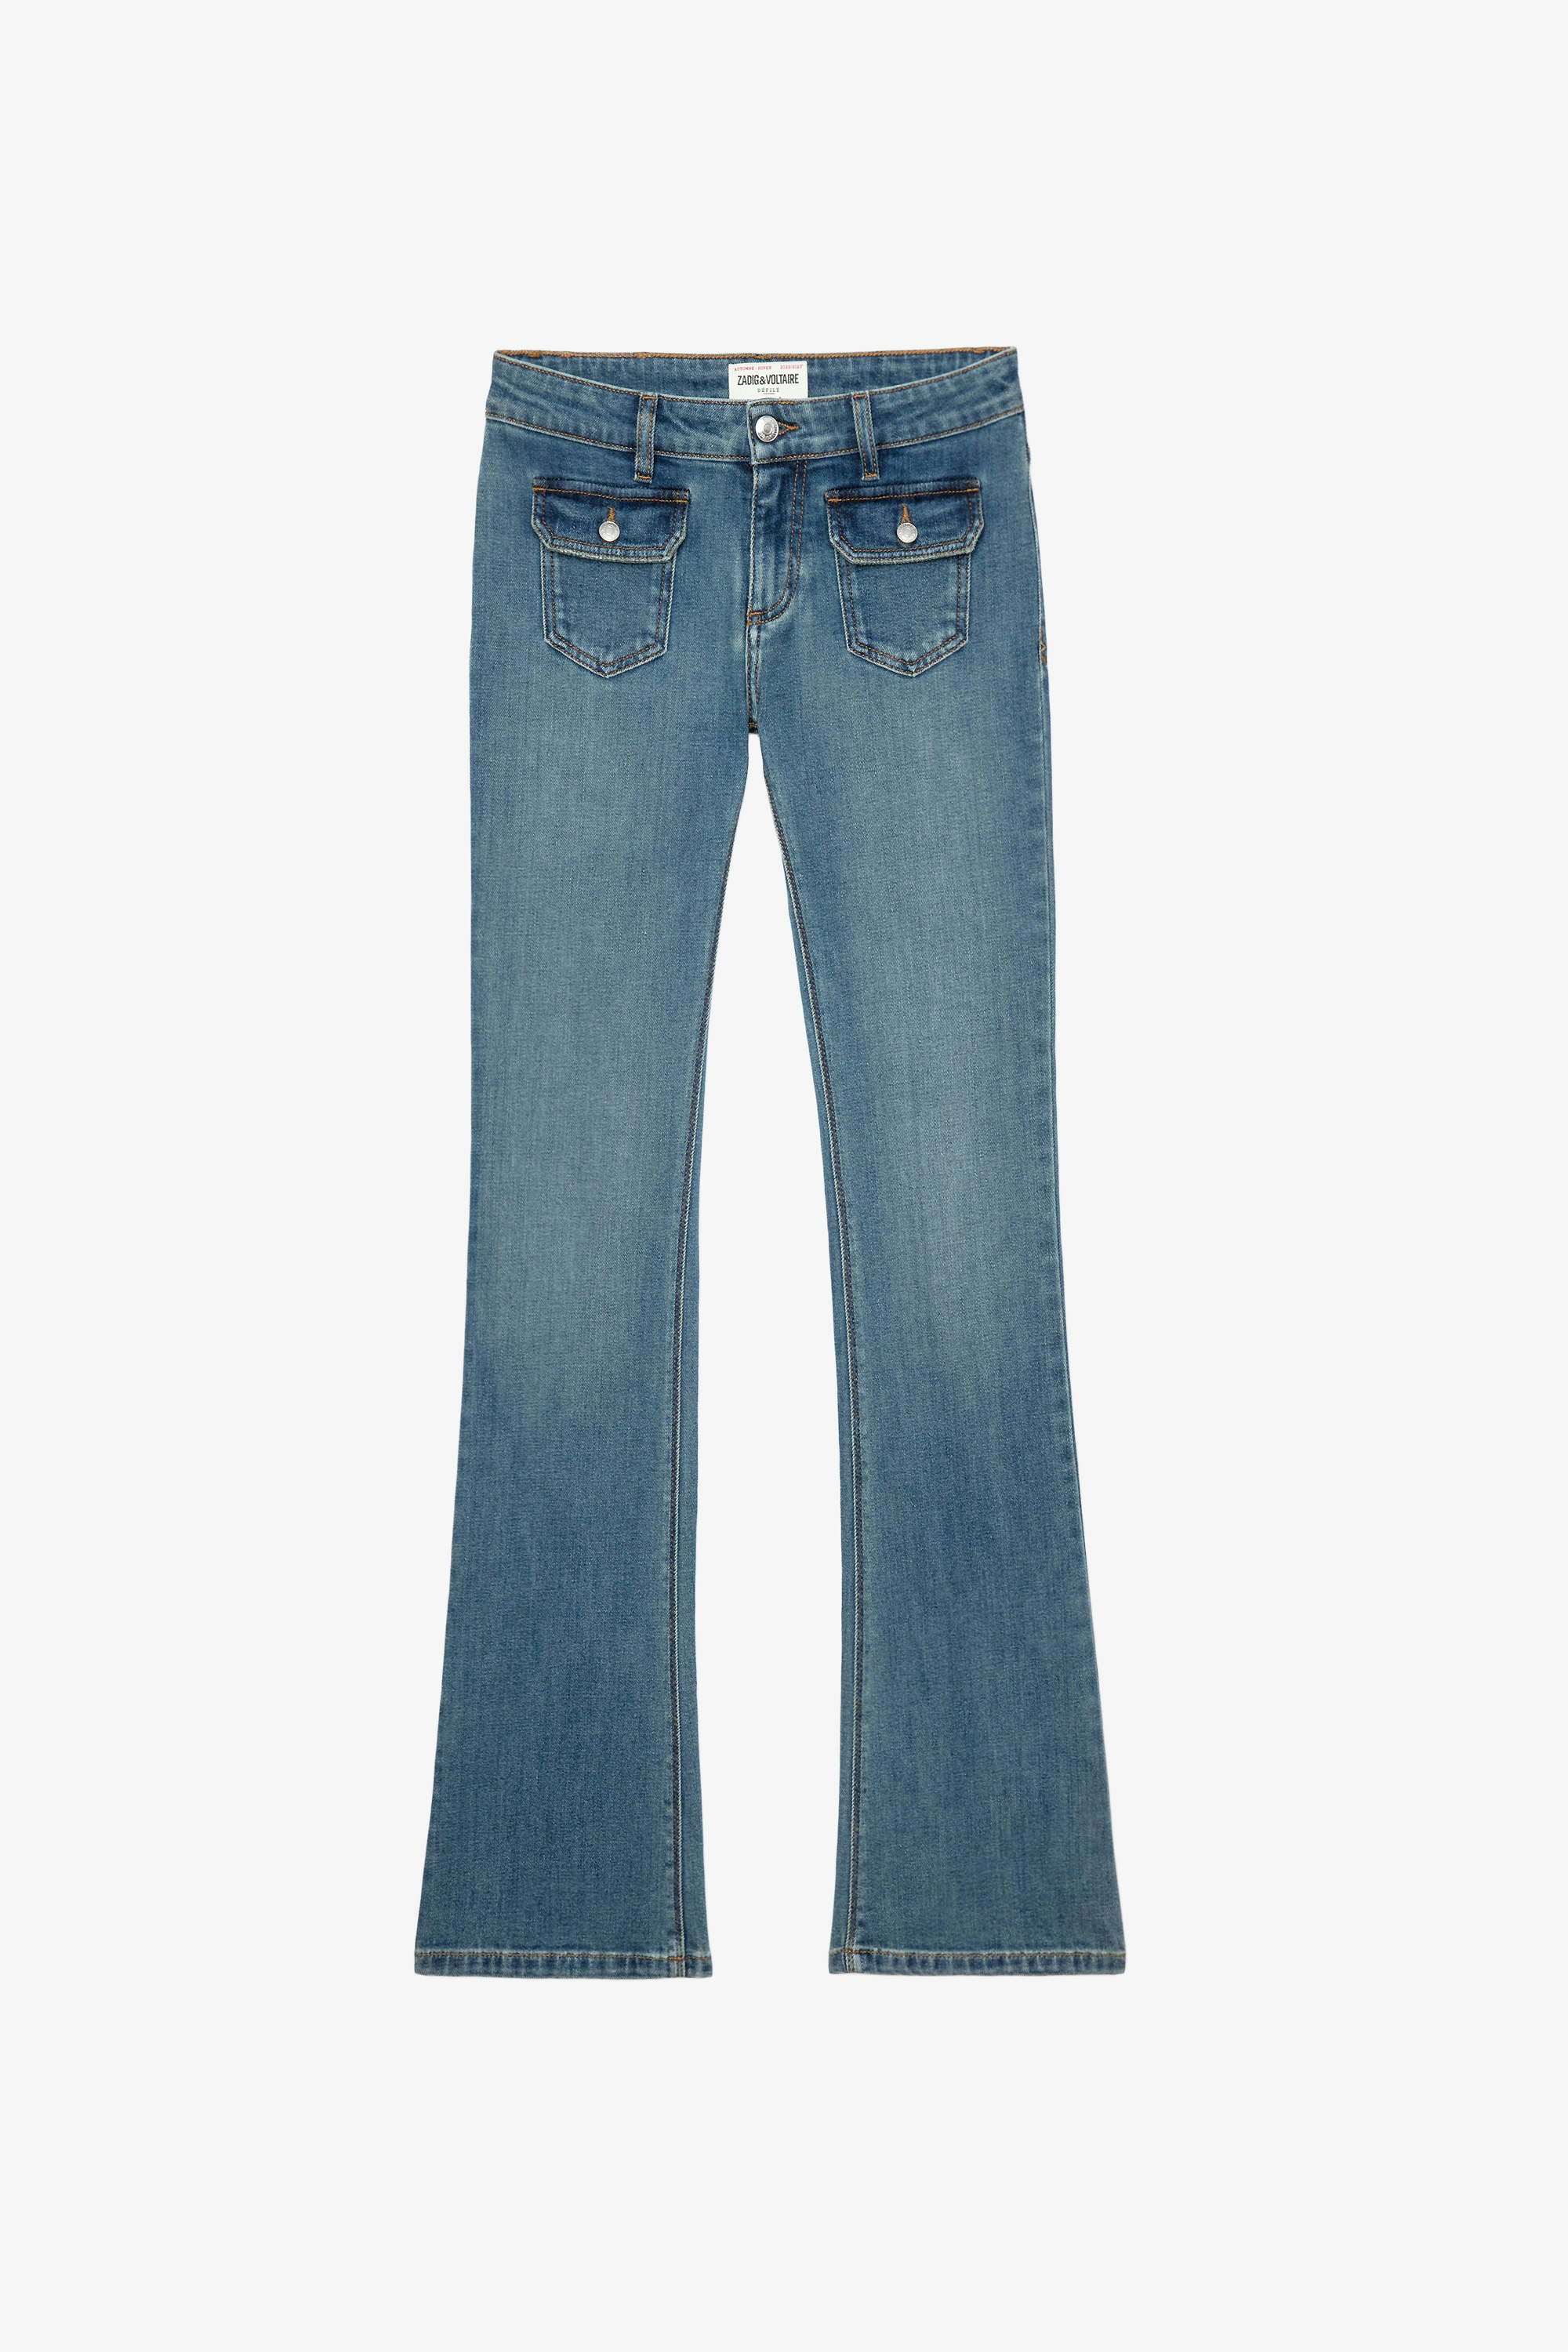 Hippie Jeans Women’s sky blue denim jeans 